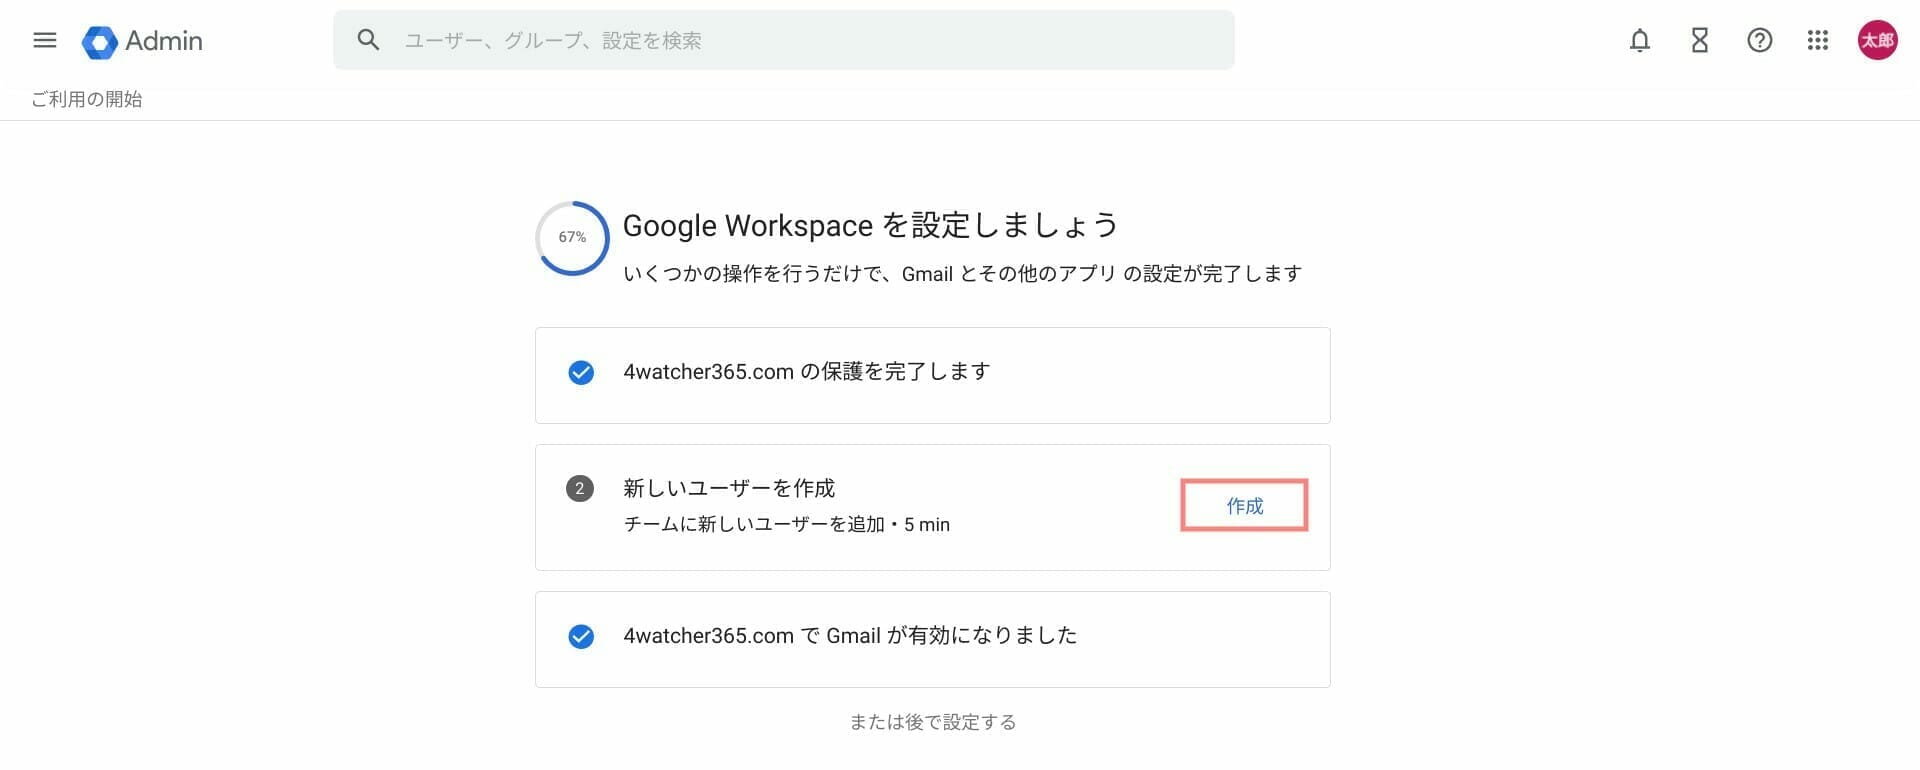 Google Workspace：初期設定項目を確認する